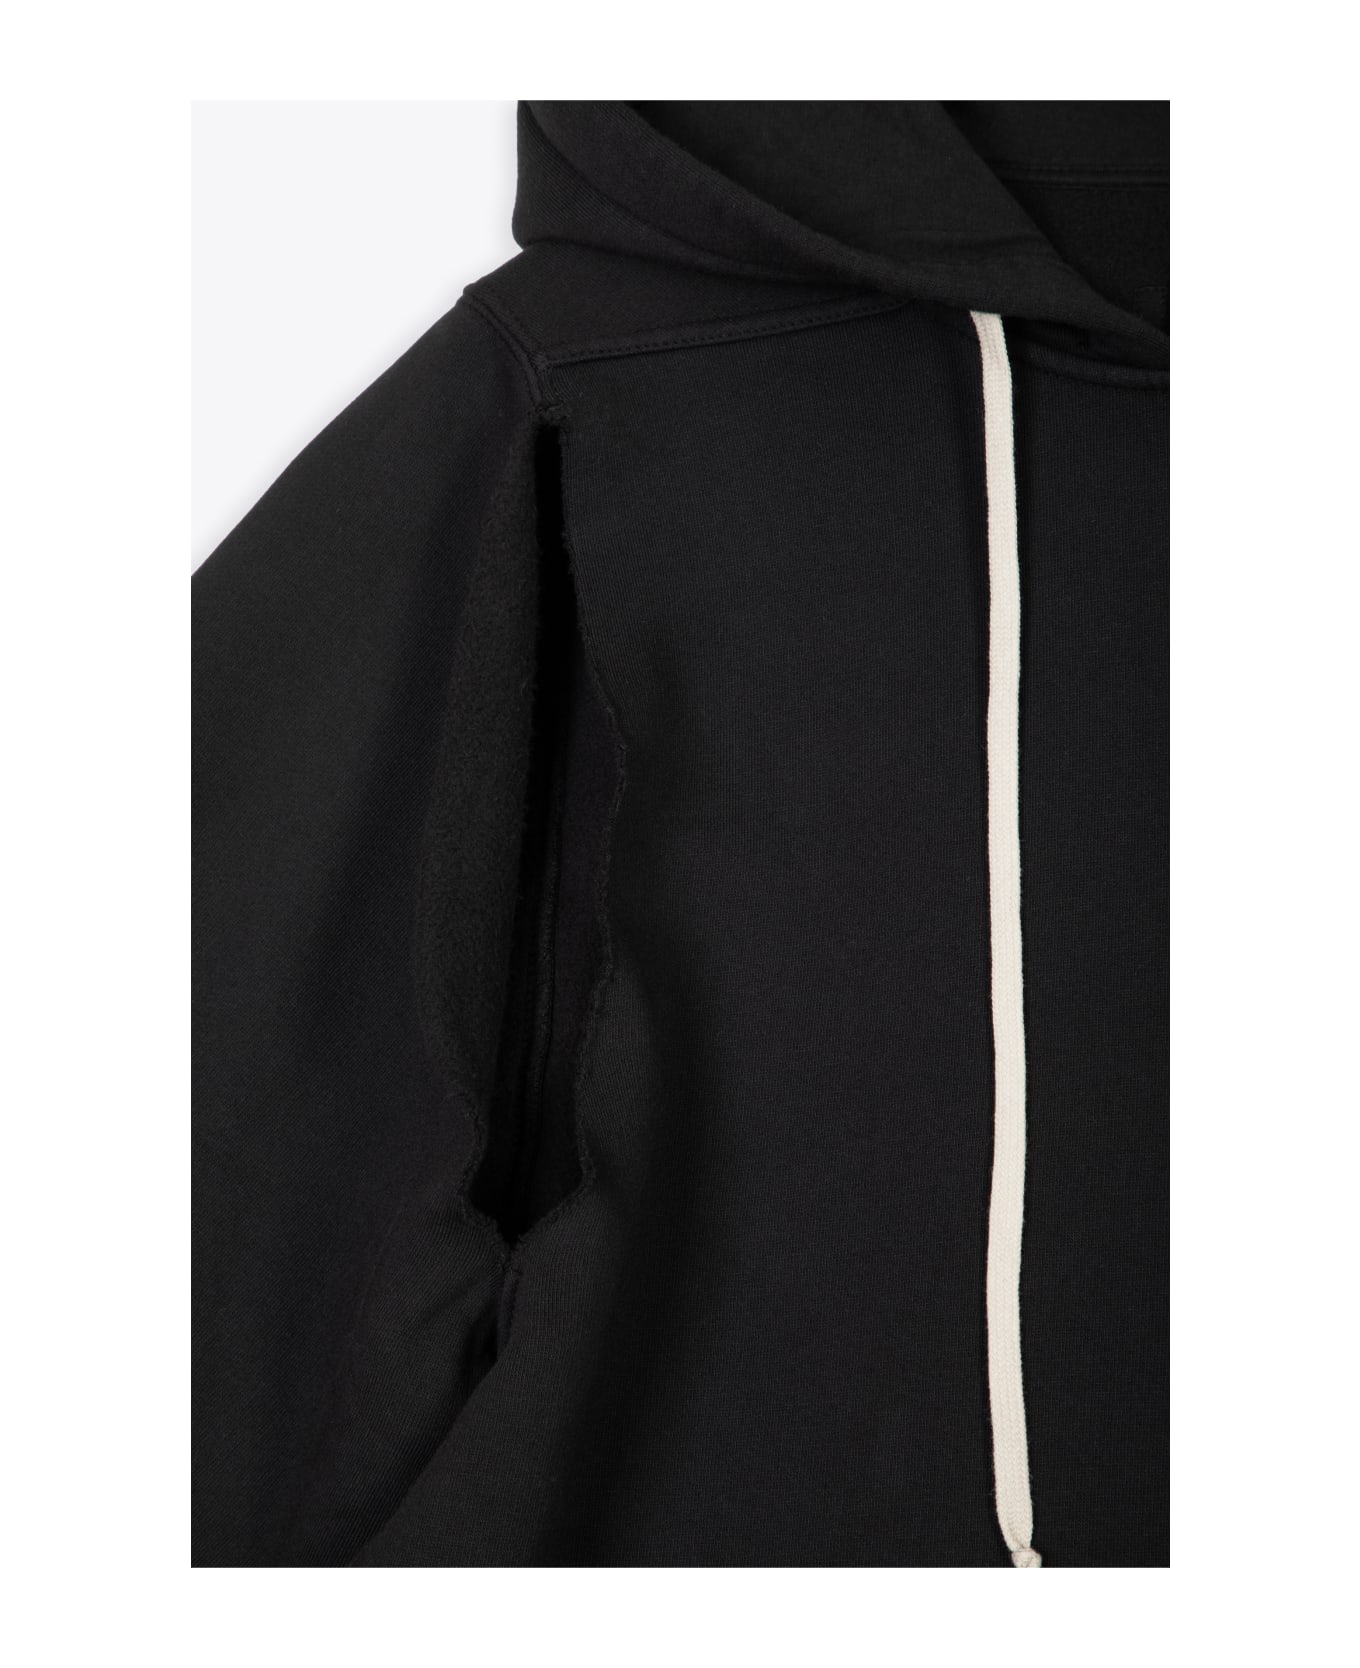 DRKSHDW Cape Sleeve Jumbo Hoodie Black Cotton Oversized Hoodie - Cape Sleeve Jumbo Hoodie - Black フリース